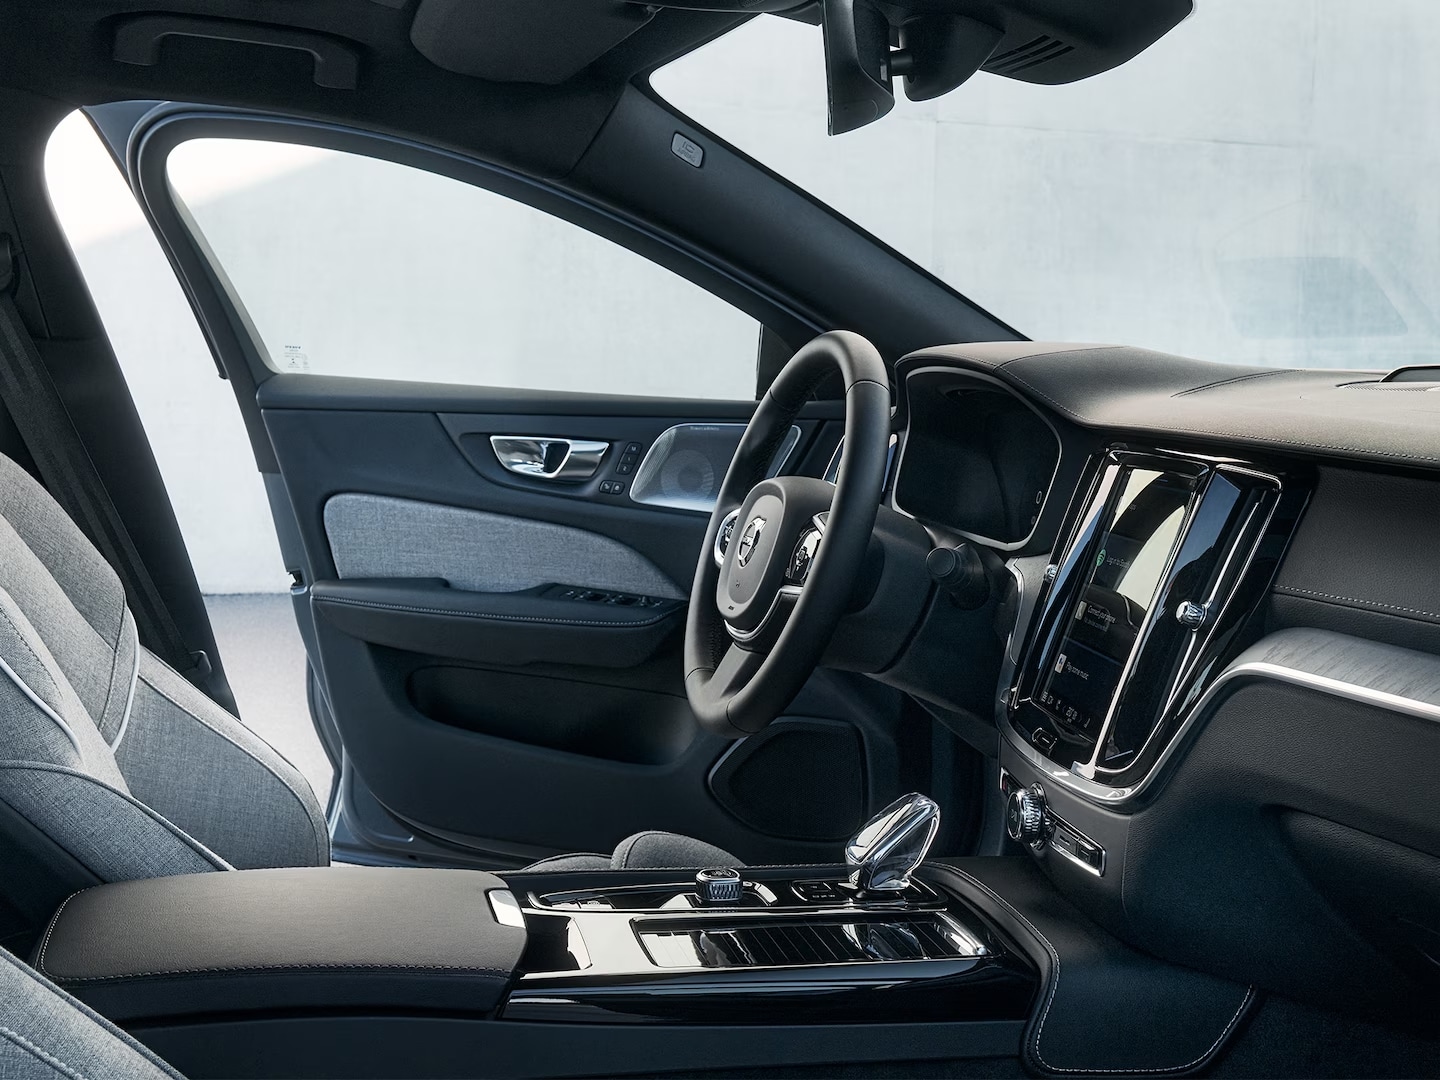 Vista interior del asiento del conductor, el volante, la pantalla de infoentretenimiento, la palanca de cambios de cristal y la puerta del asiento del conductor en el Volvo S60 Recharge híbrido enchufable.